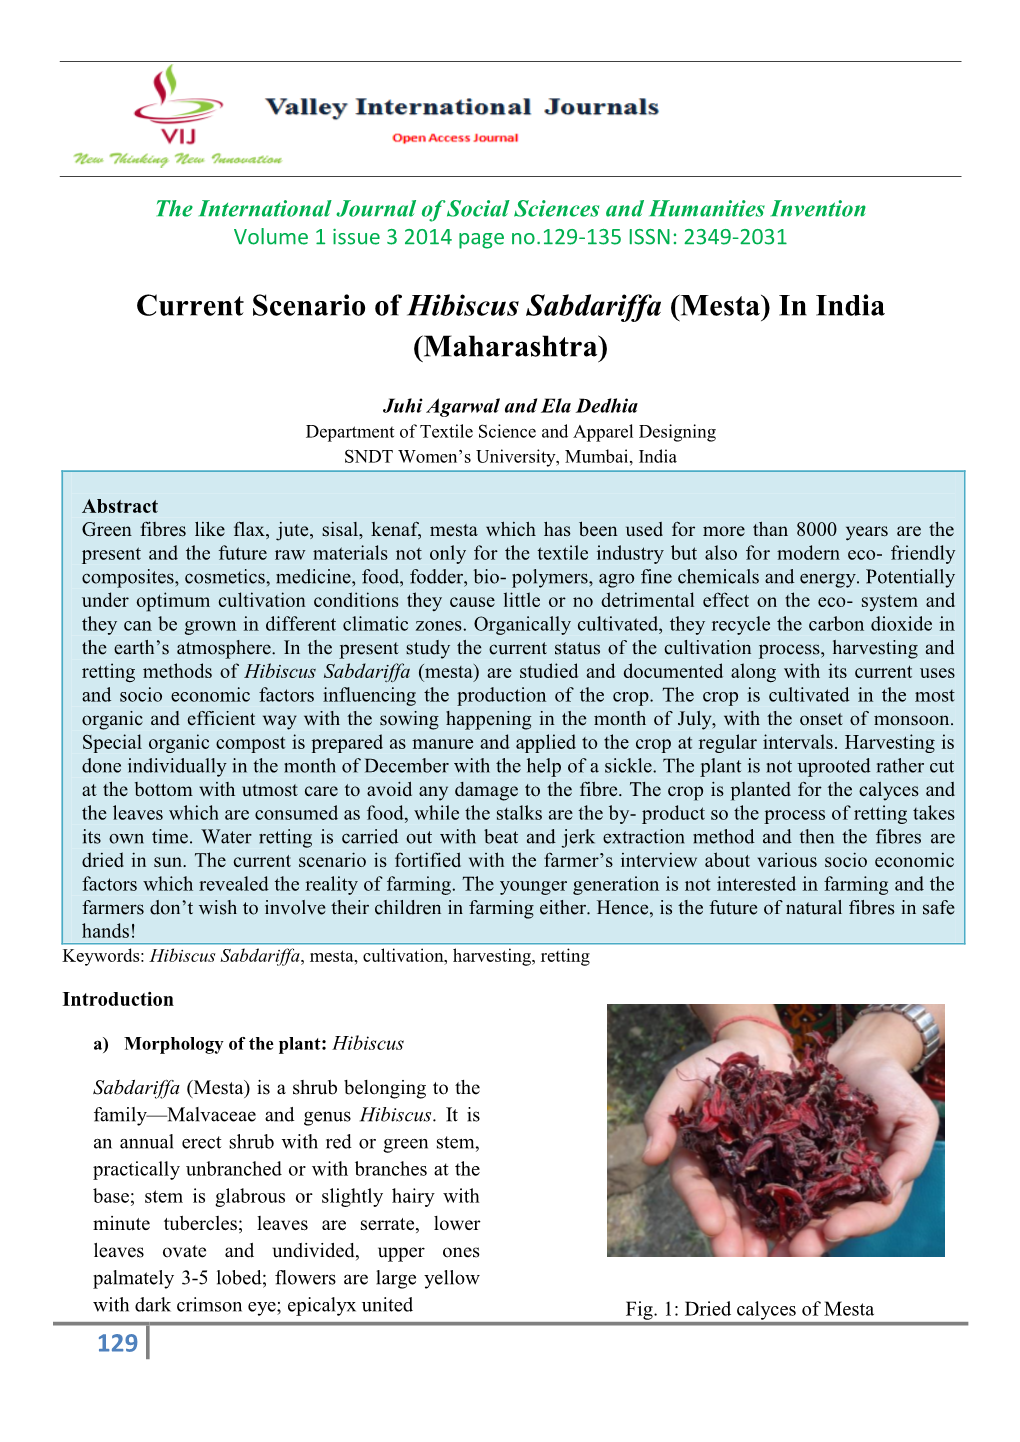 Current Scenario of Hibiscus Sabdariffa (Mesta) in India (Maharashtra)